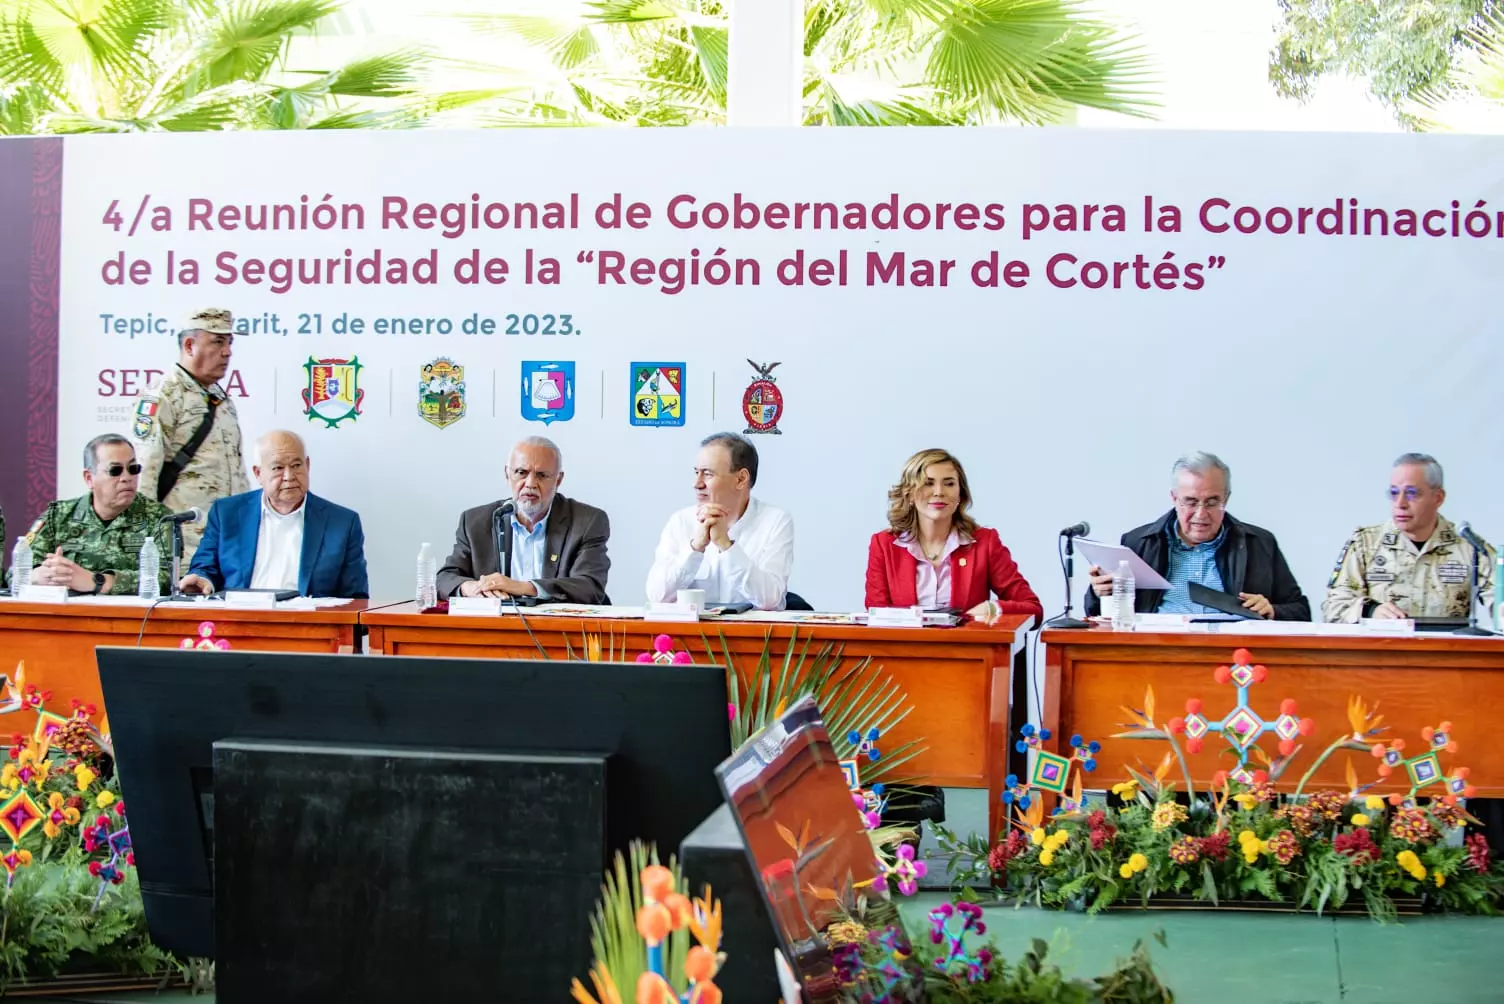 Acuerdos de seguridad entre gobernadores de la región Mar de Cortés